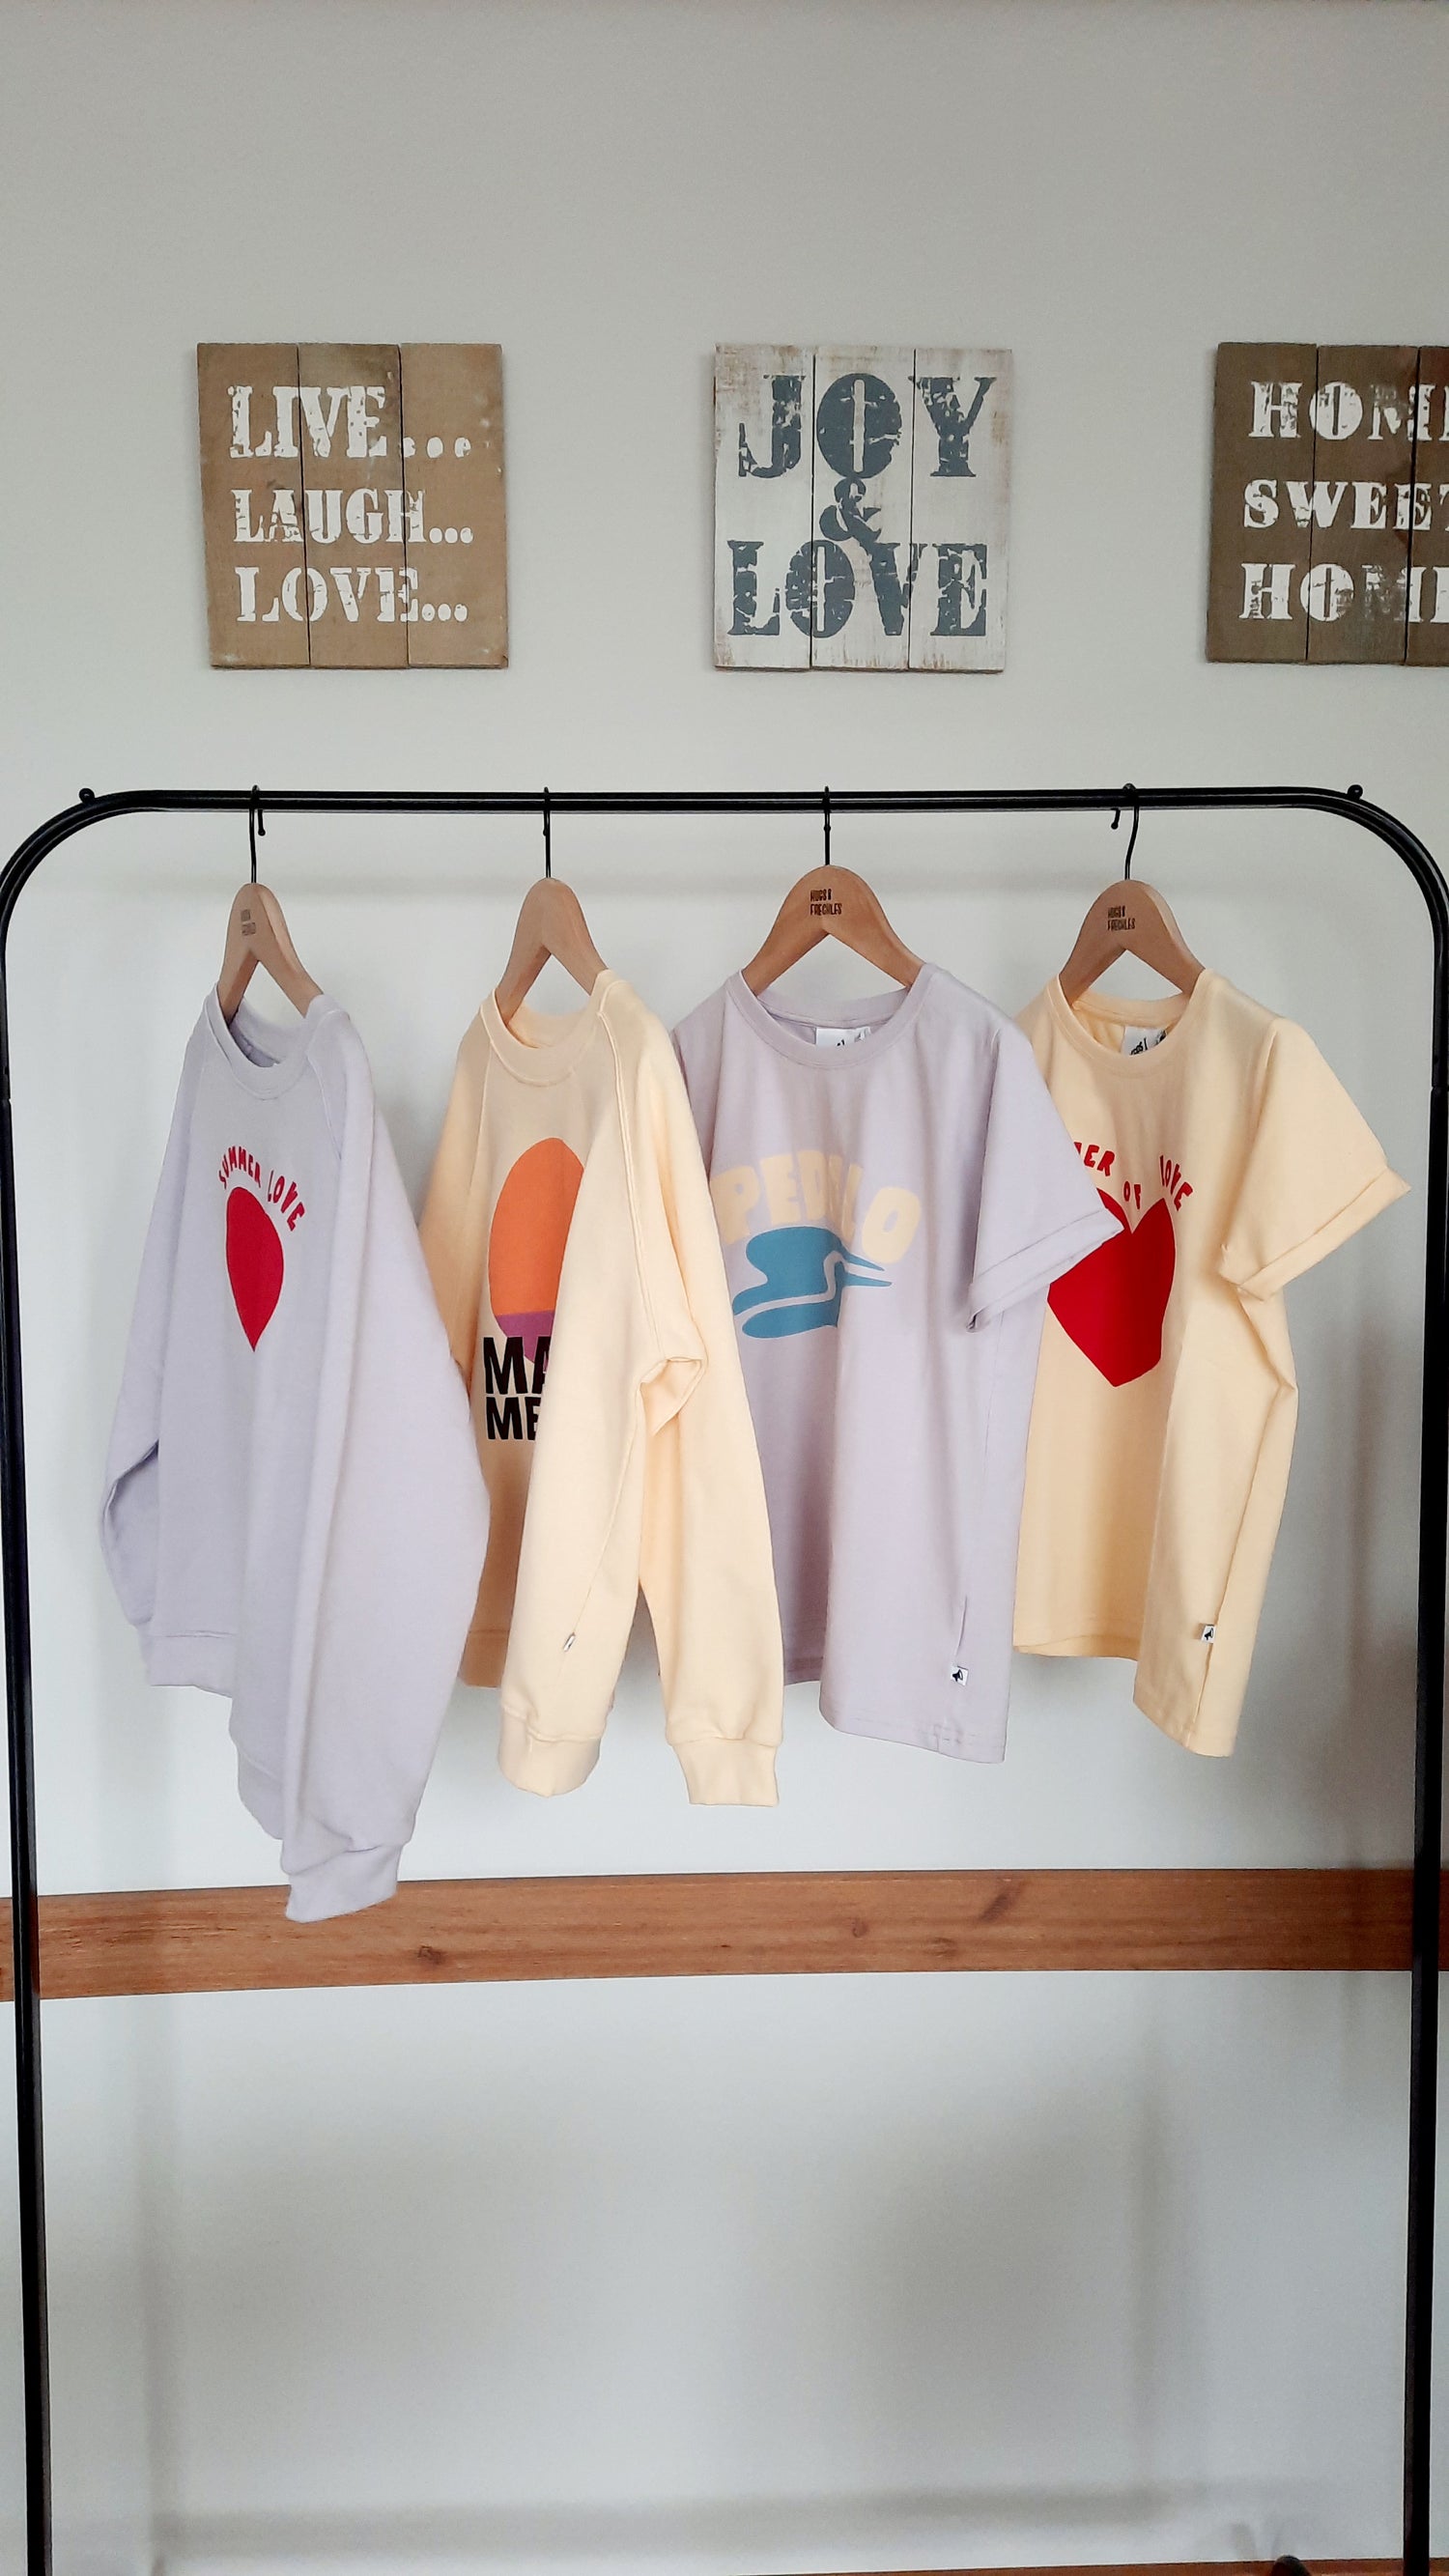 Nachhaltiges Sweatshirt - Summer of Love